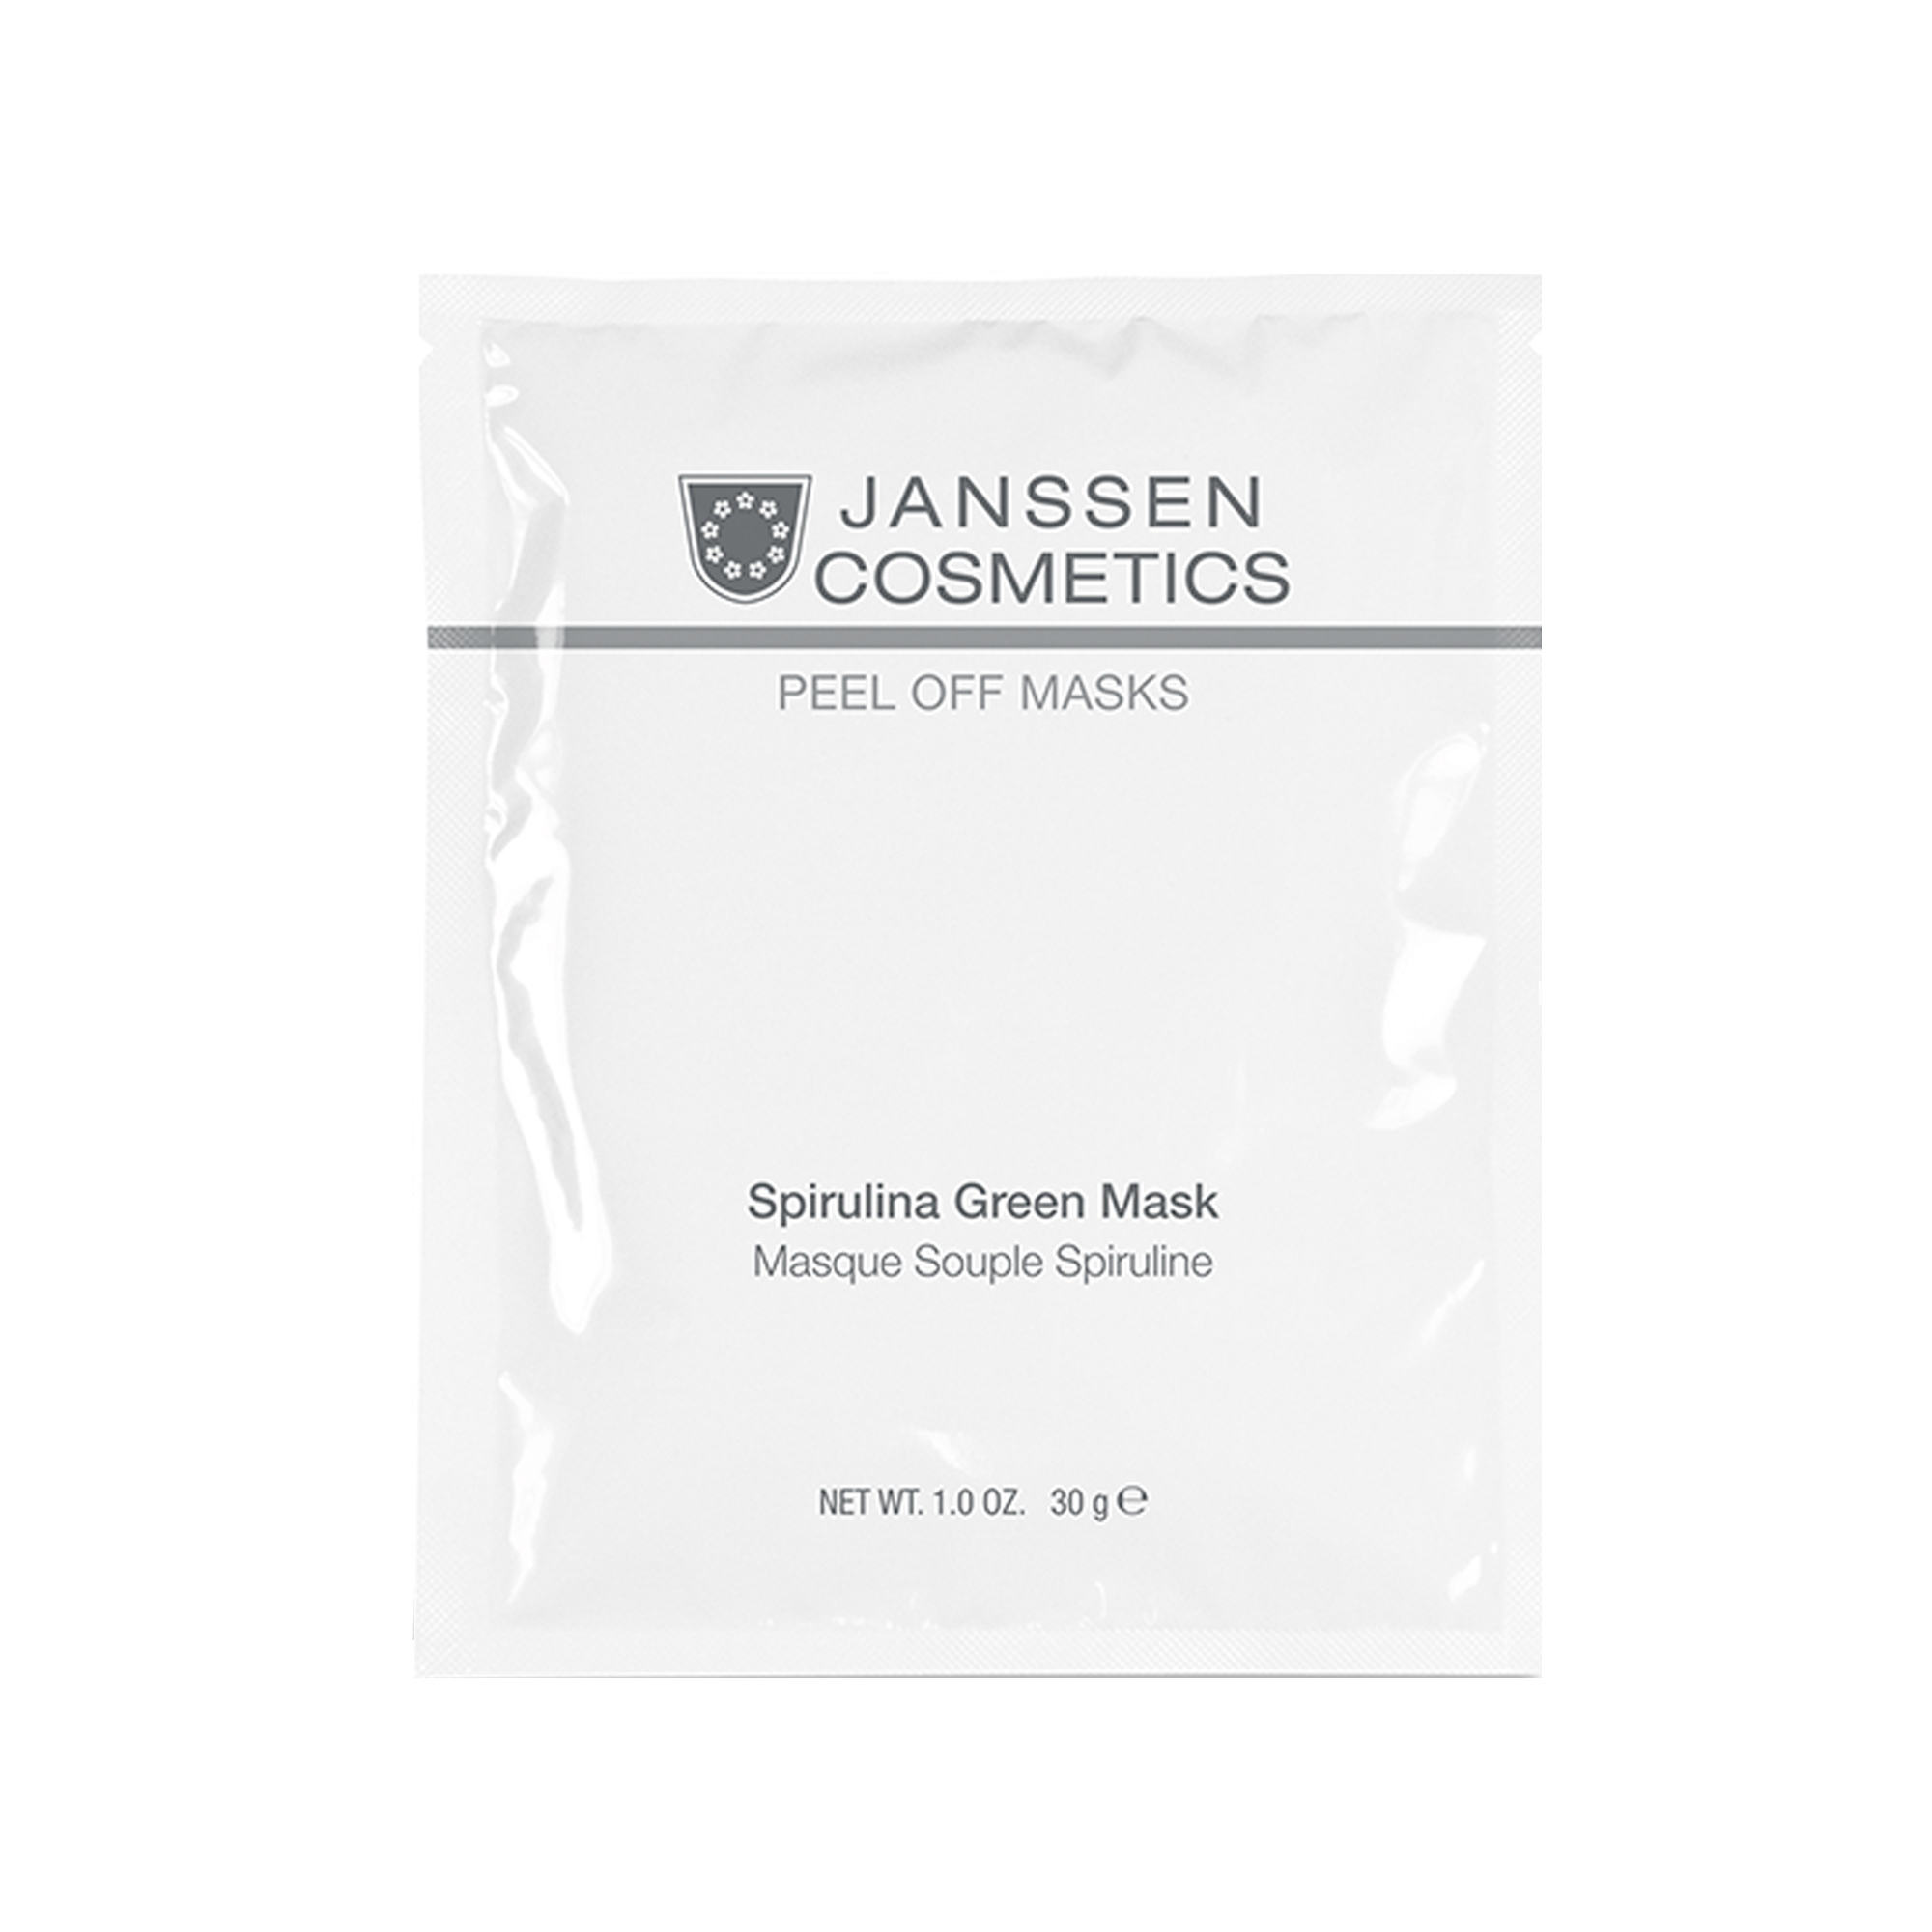 Spirulina Green Mask Powder 30g JANSSEN